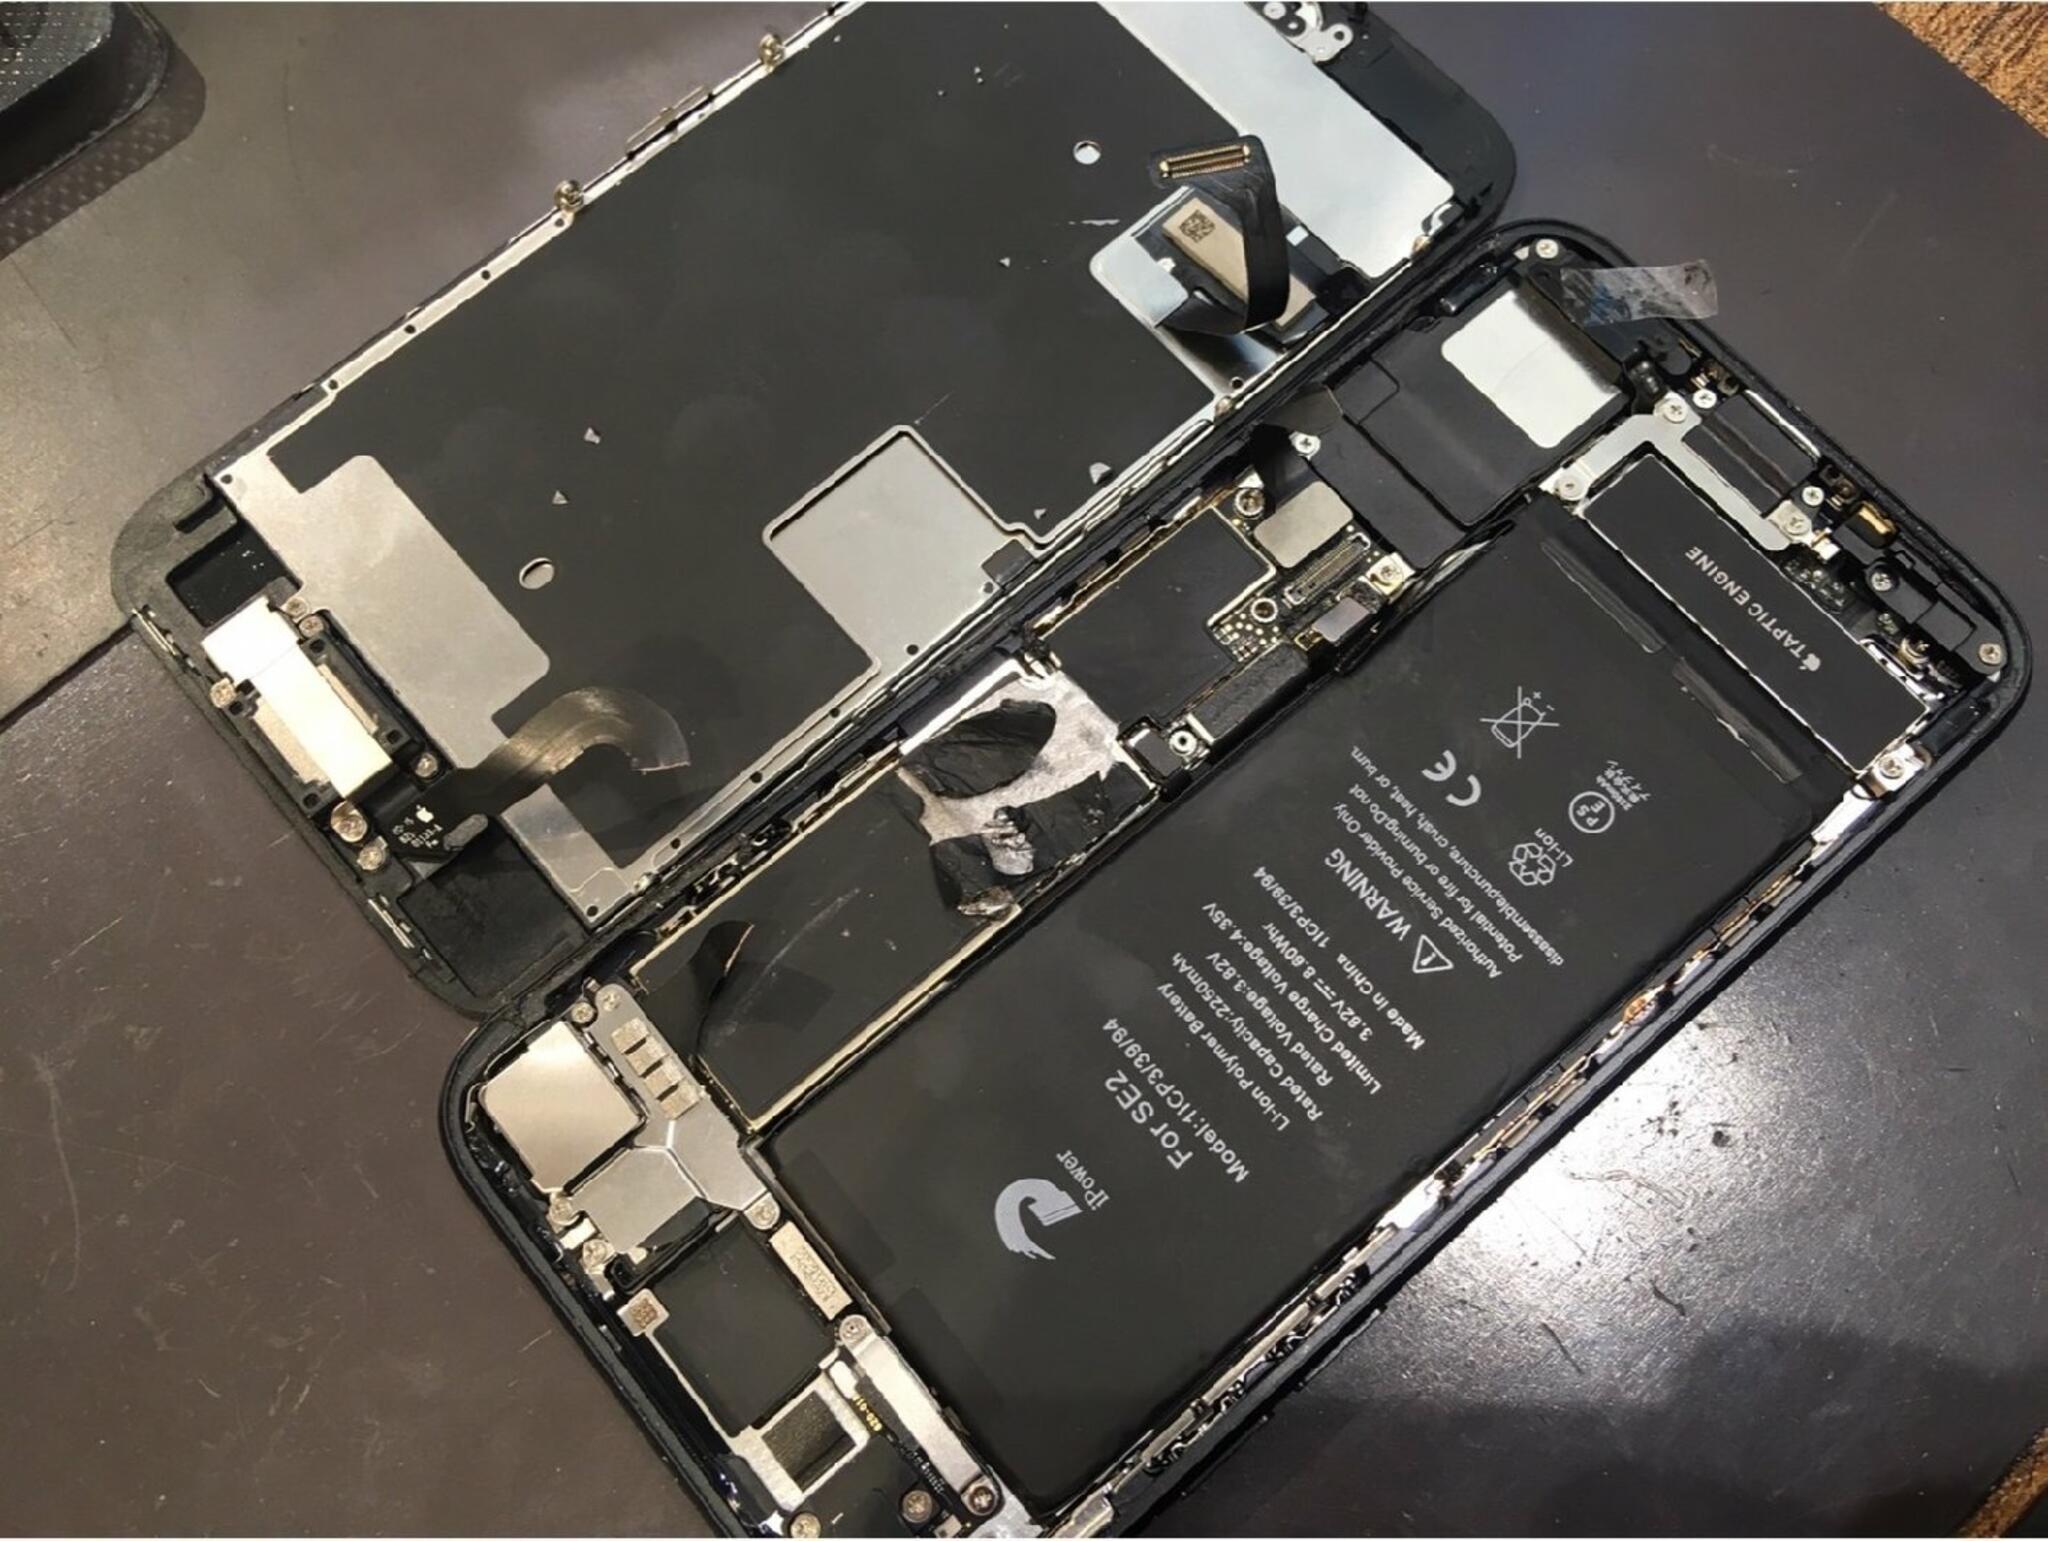 iPhone・iPad・Switch修理店 スマートクール イオンモール広島祇園店からのお知らせ(ご自身で修理する場合は注意が必要です)に関する写真